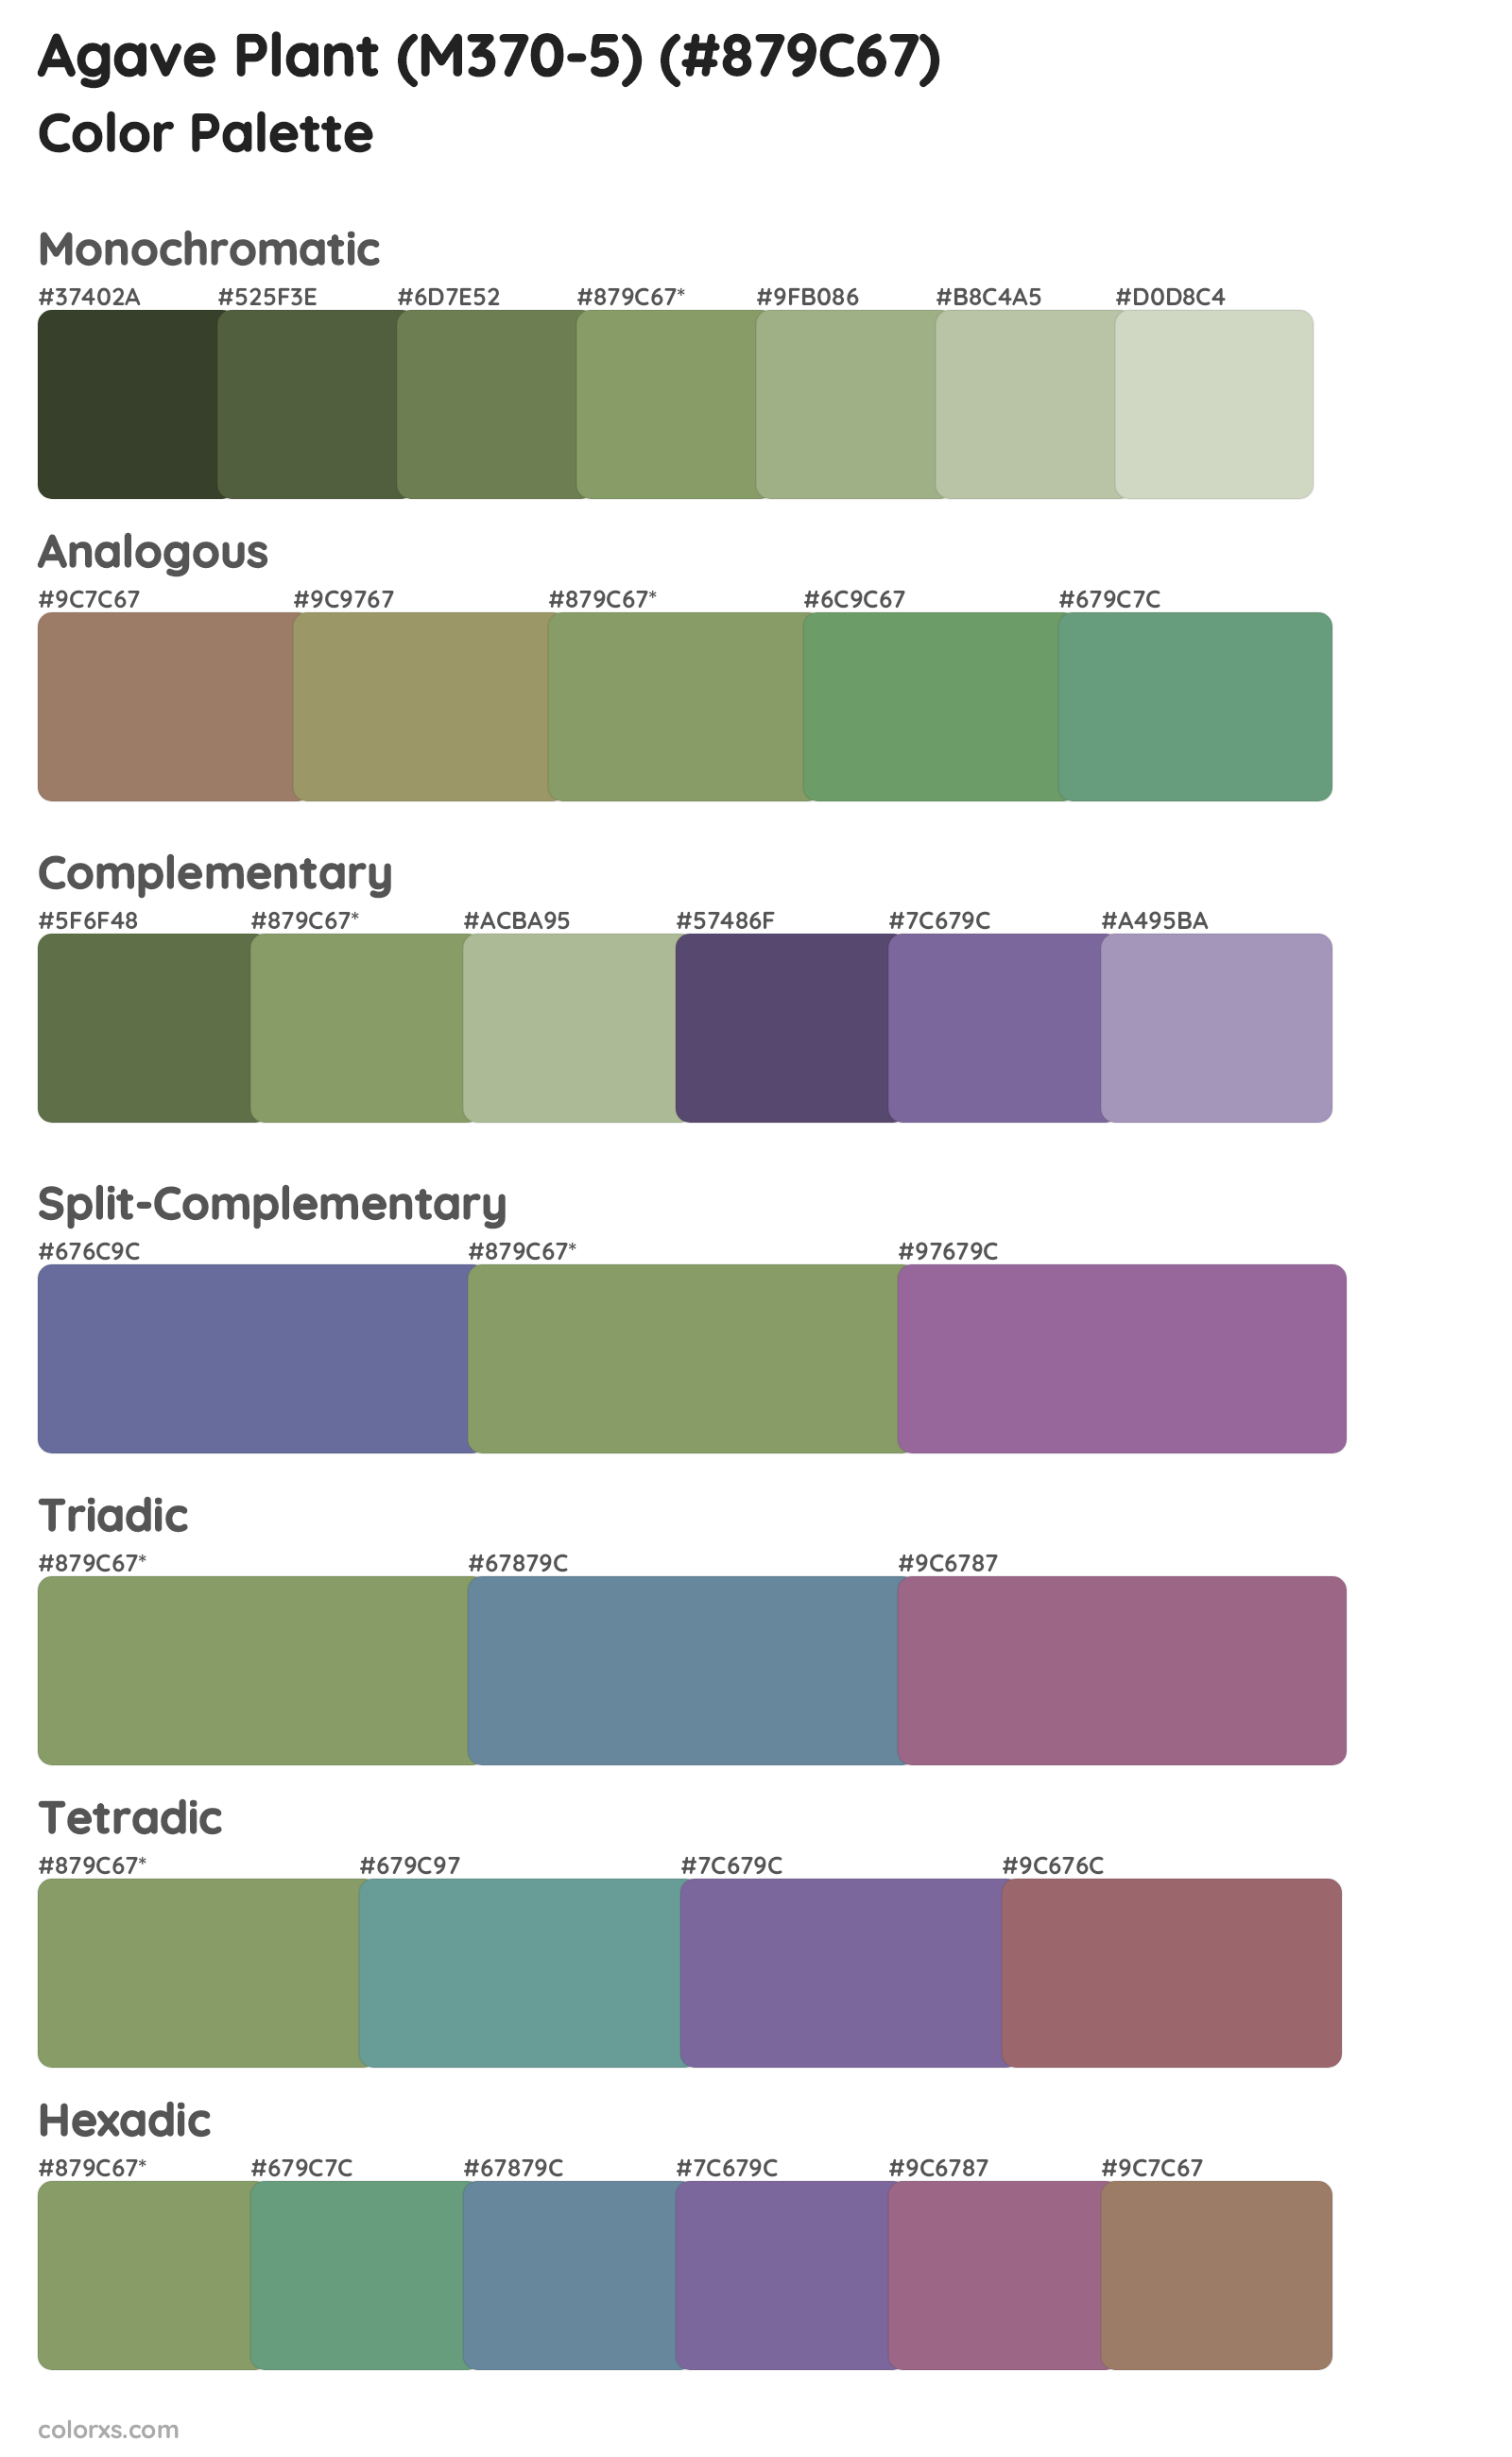 Agave Plant (M370-5) Color Scheme Palettes